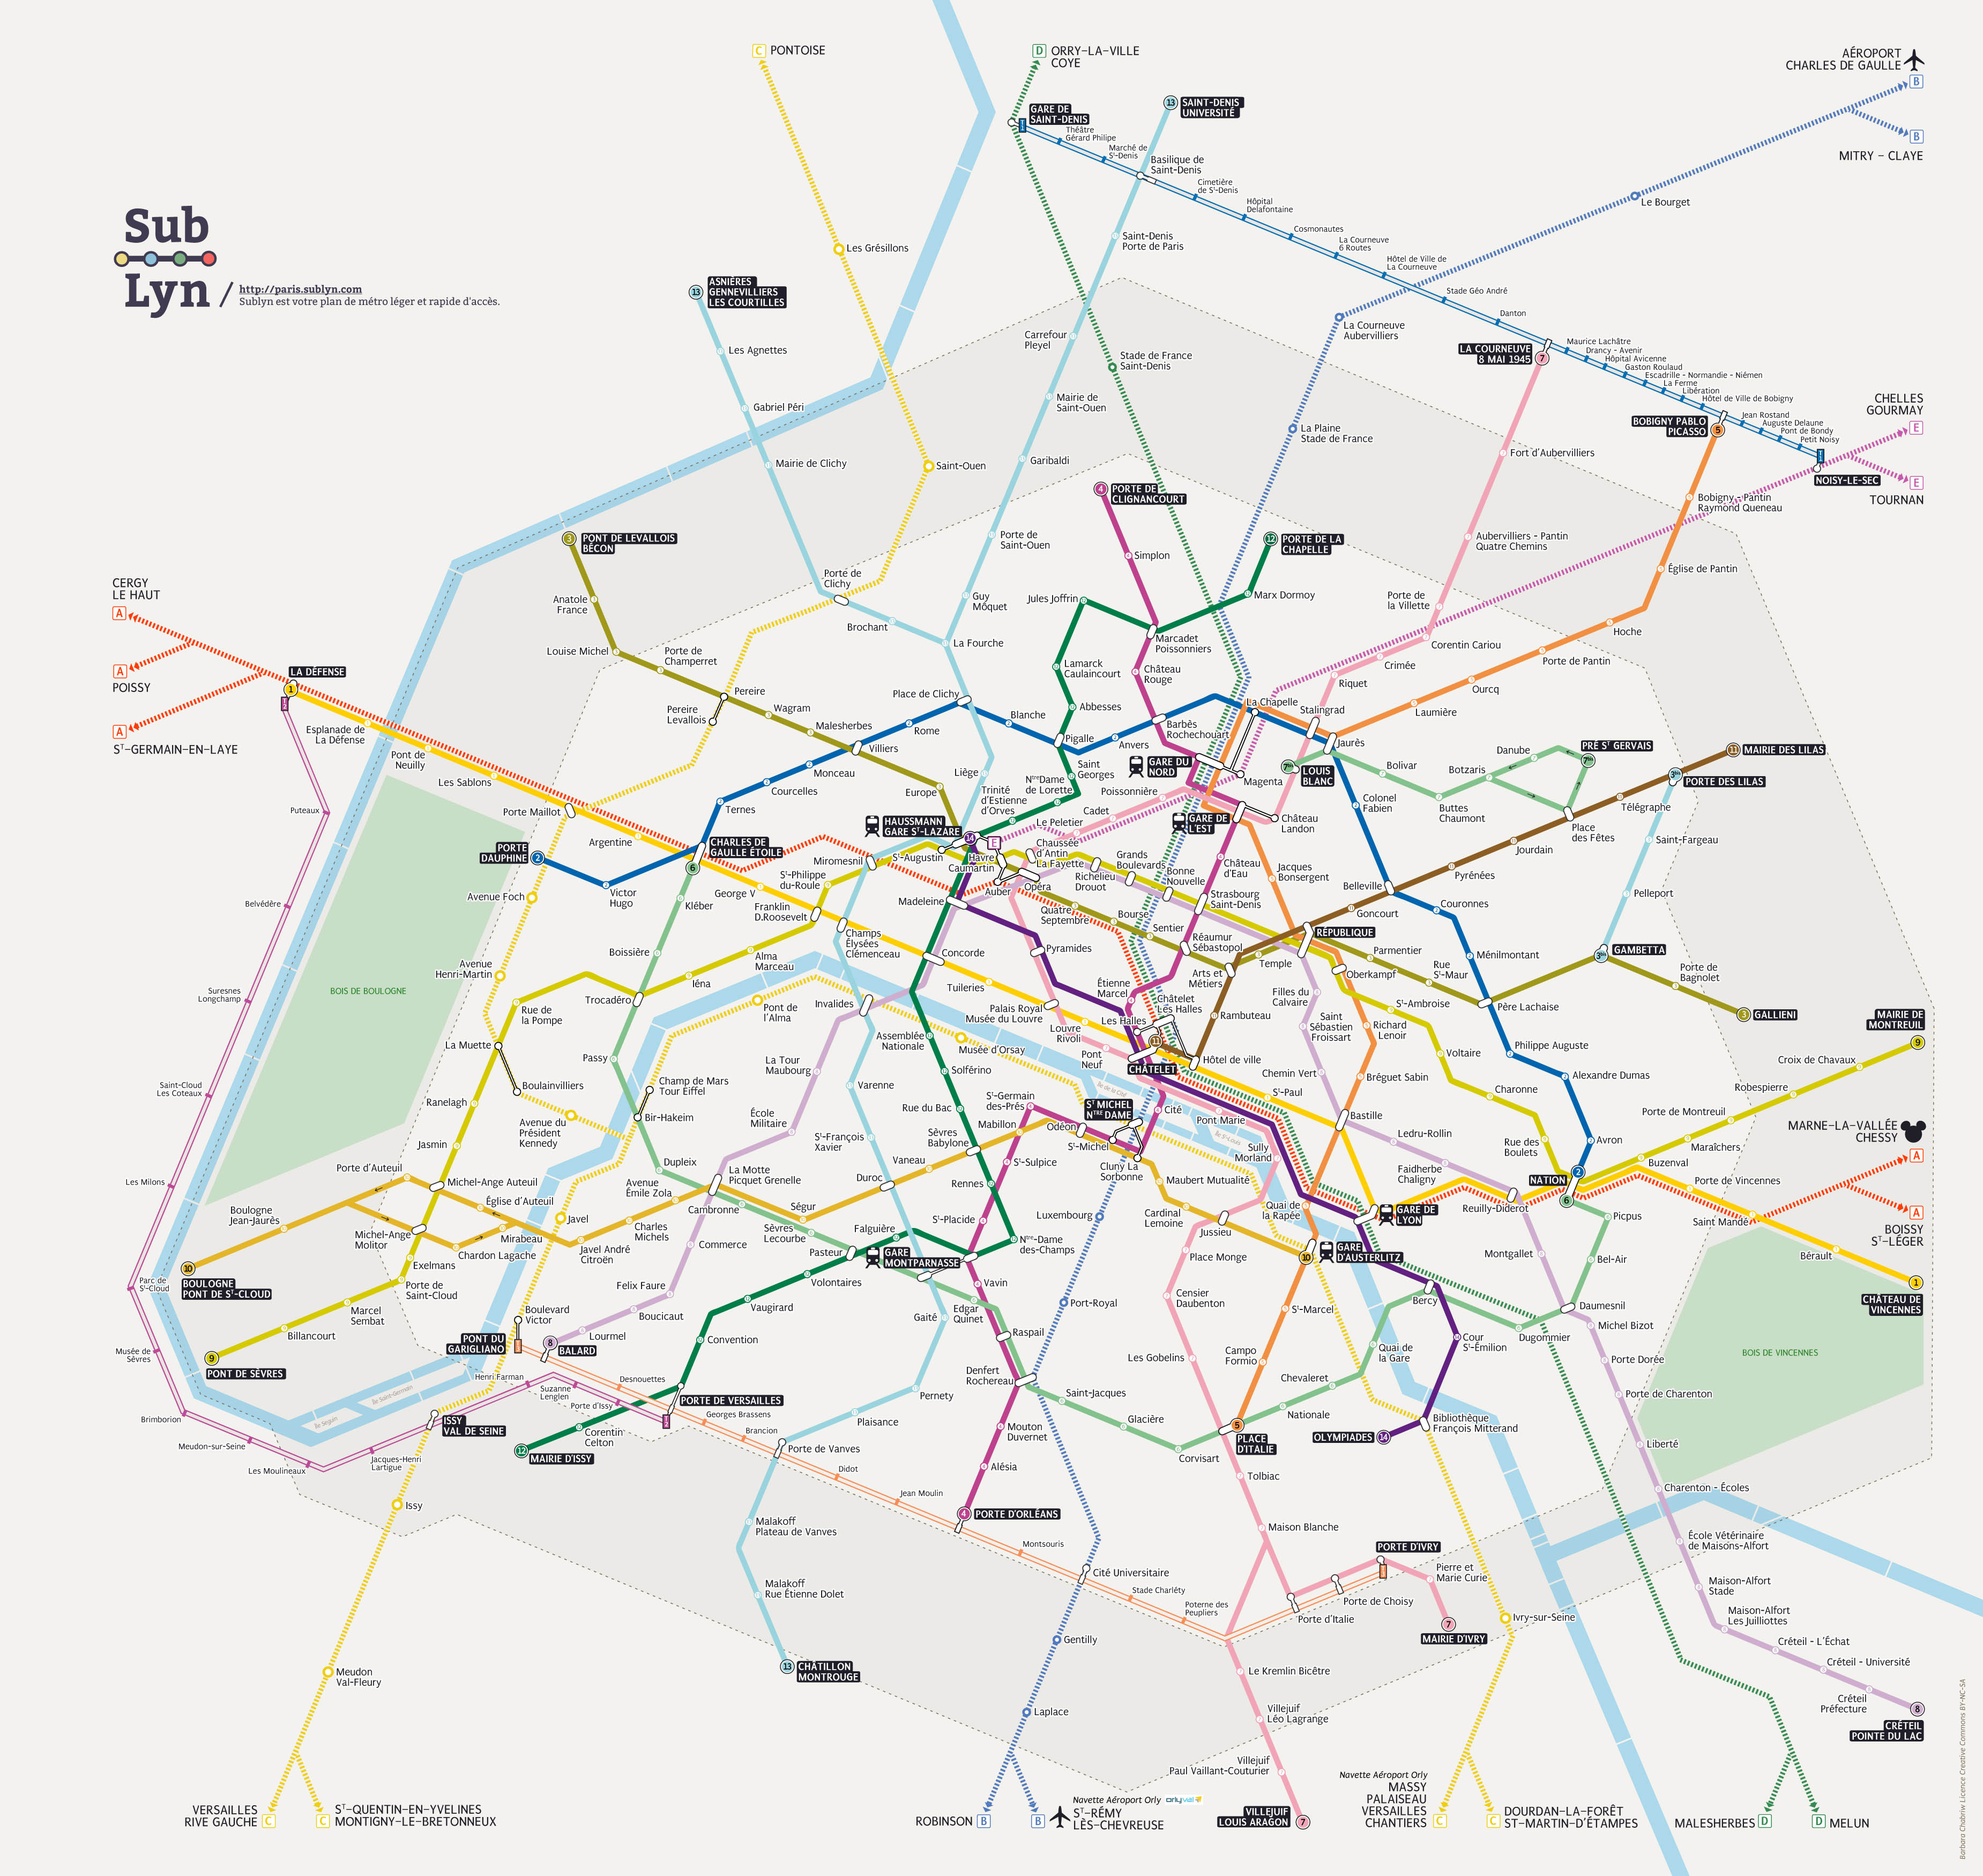 Plan des métro de Paris de Barbara Chabriw